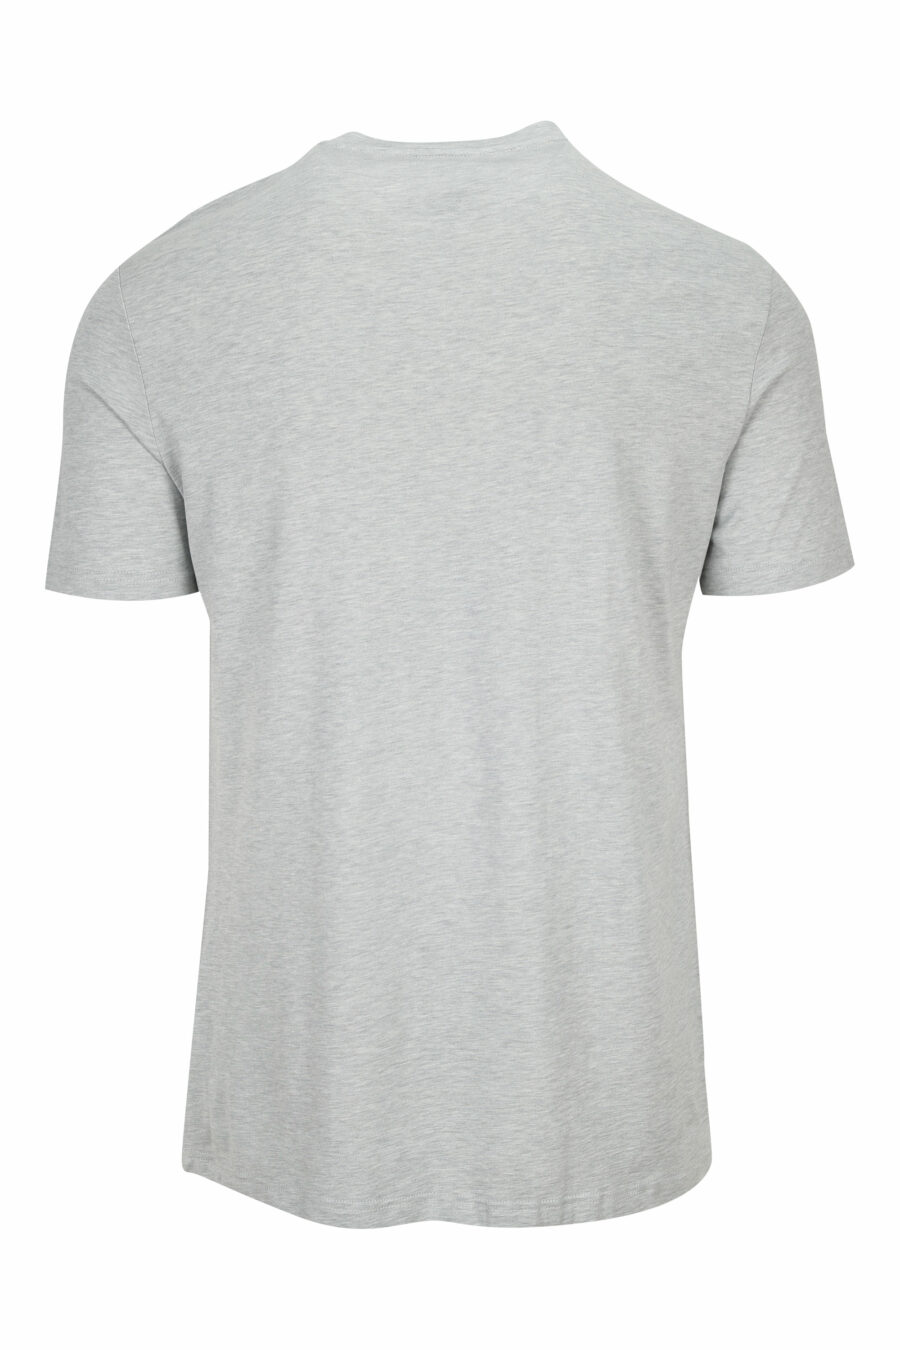 Graues T-Shirt mit schwarzem Minilogue - 8032674525109 1